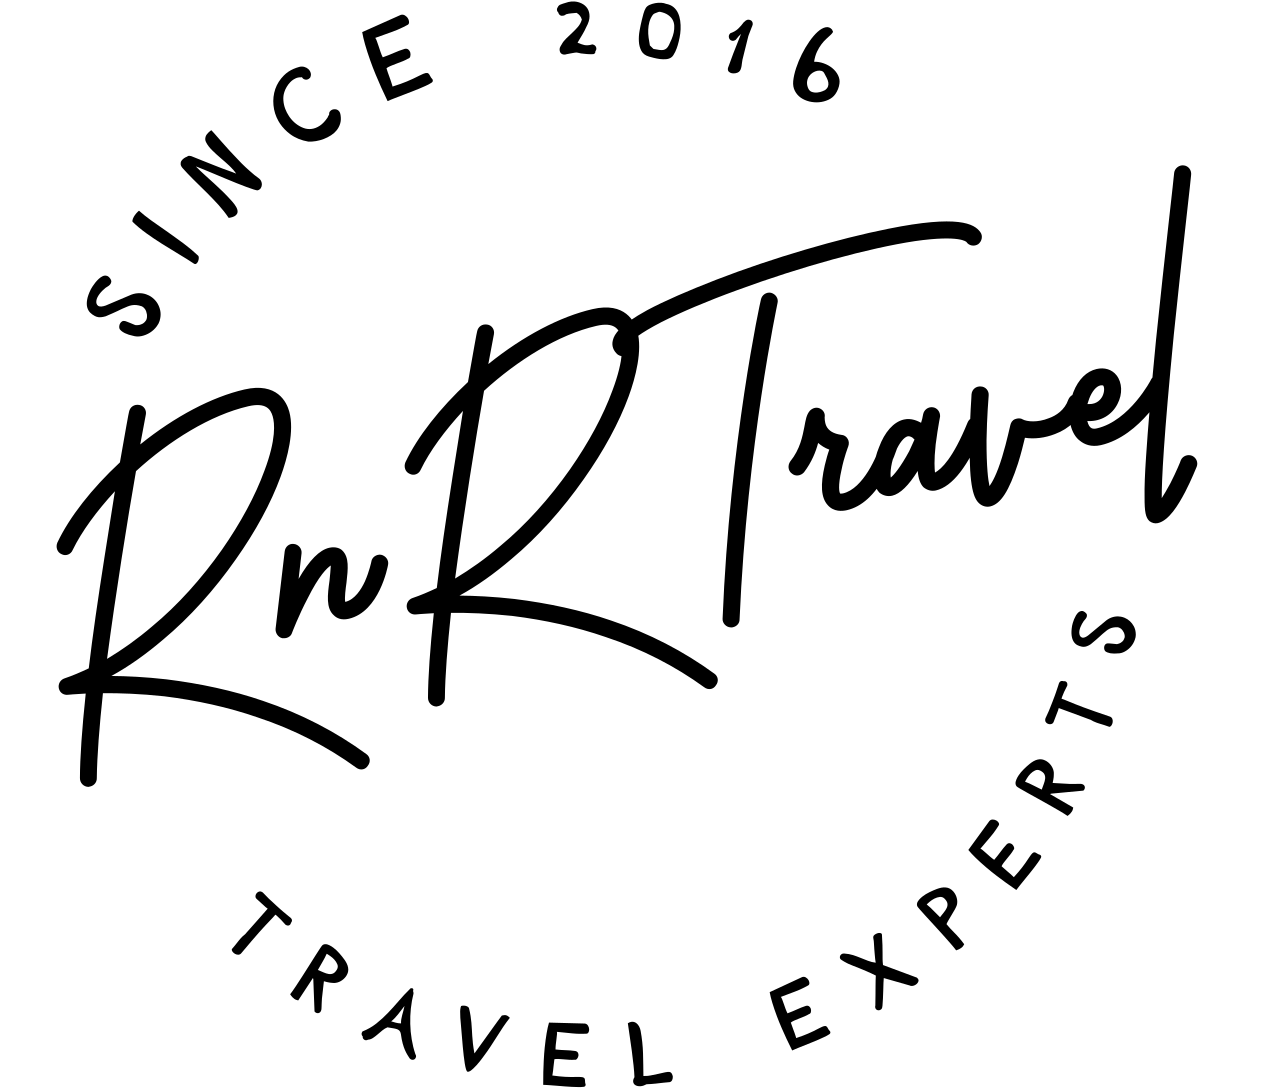 RnRTravel's logo